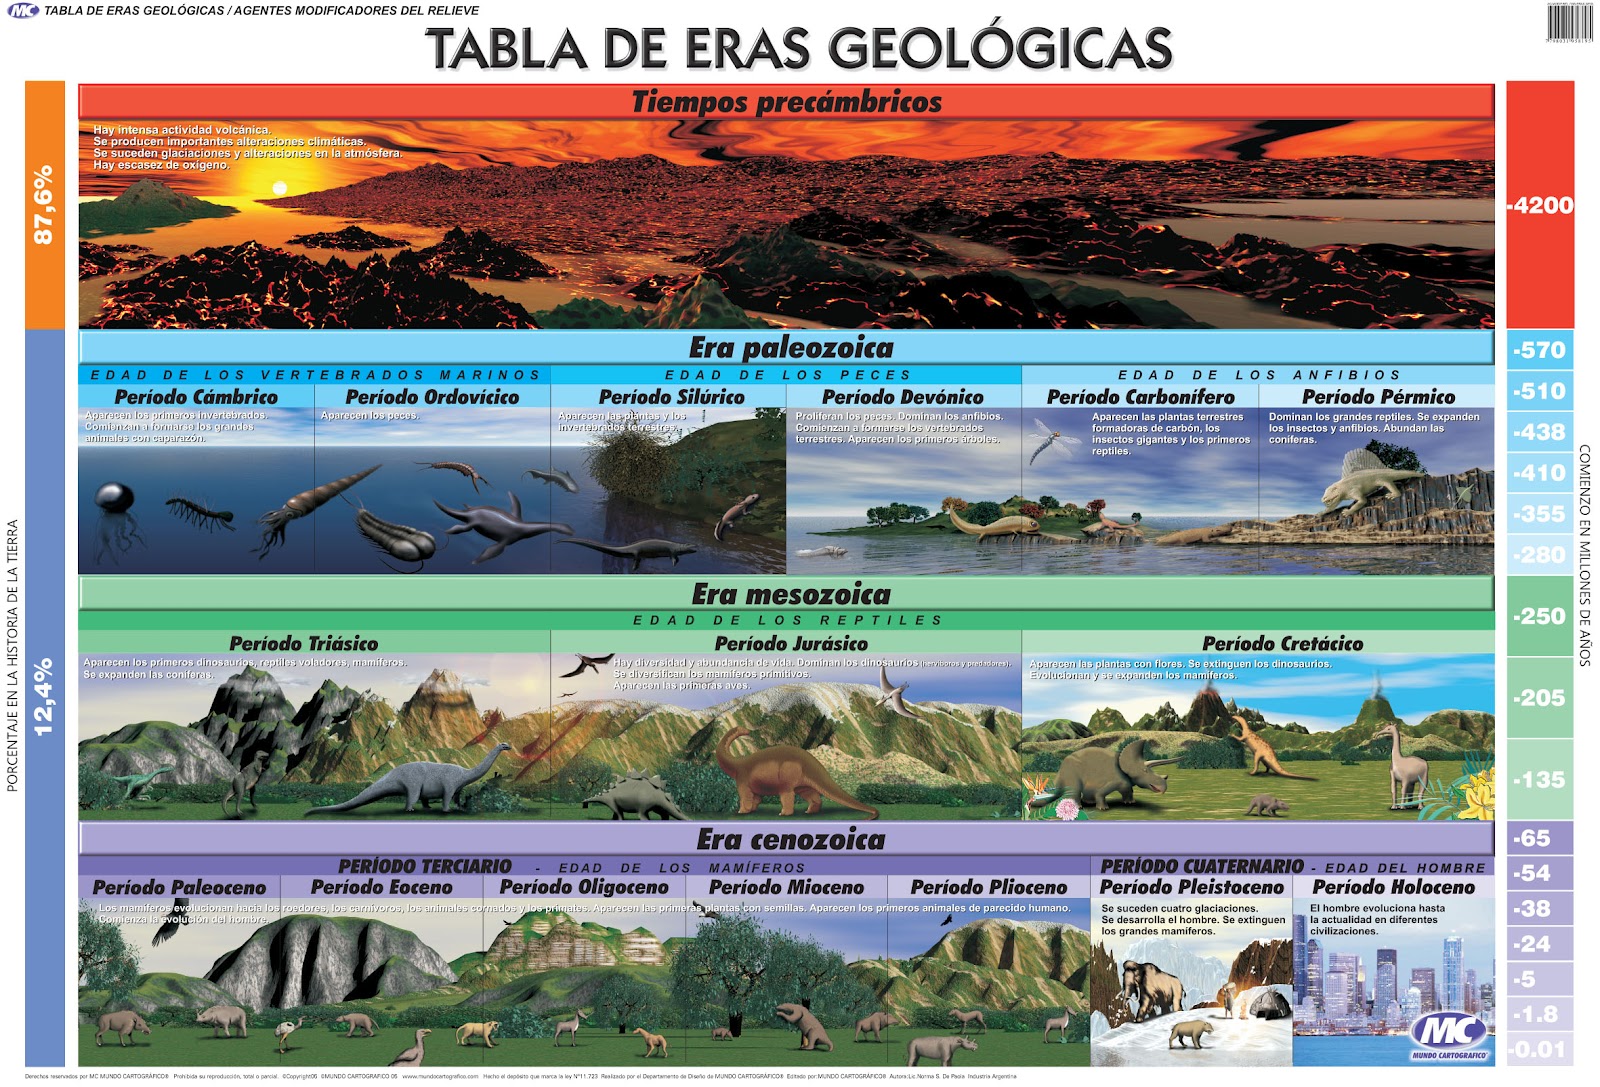 Eras geologicas